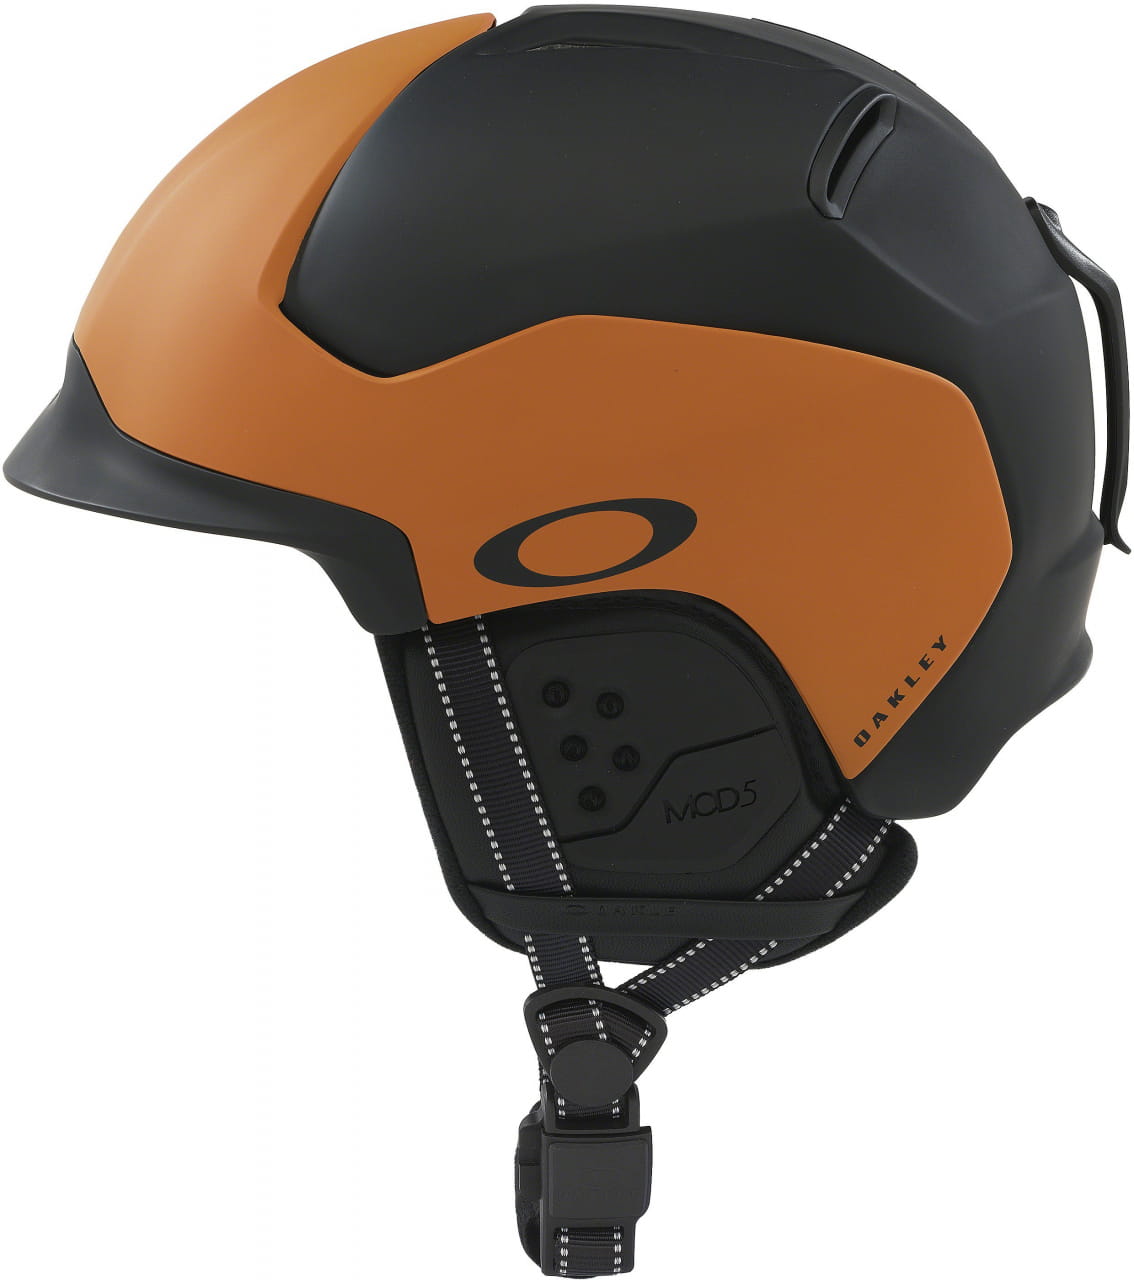 Lyžařská helma Oakley Mod5